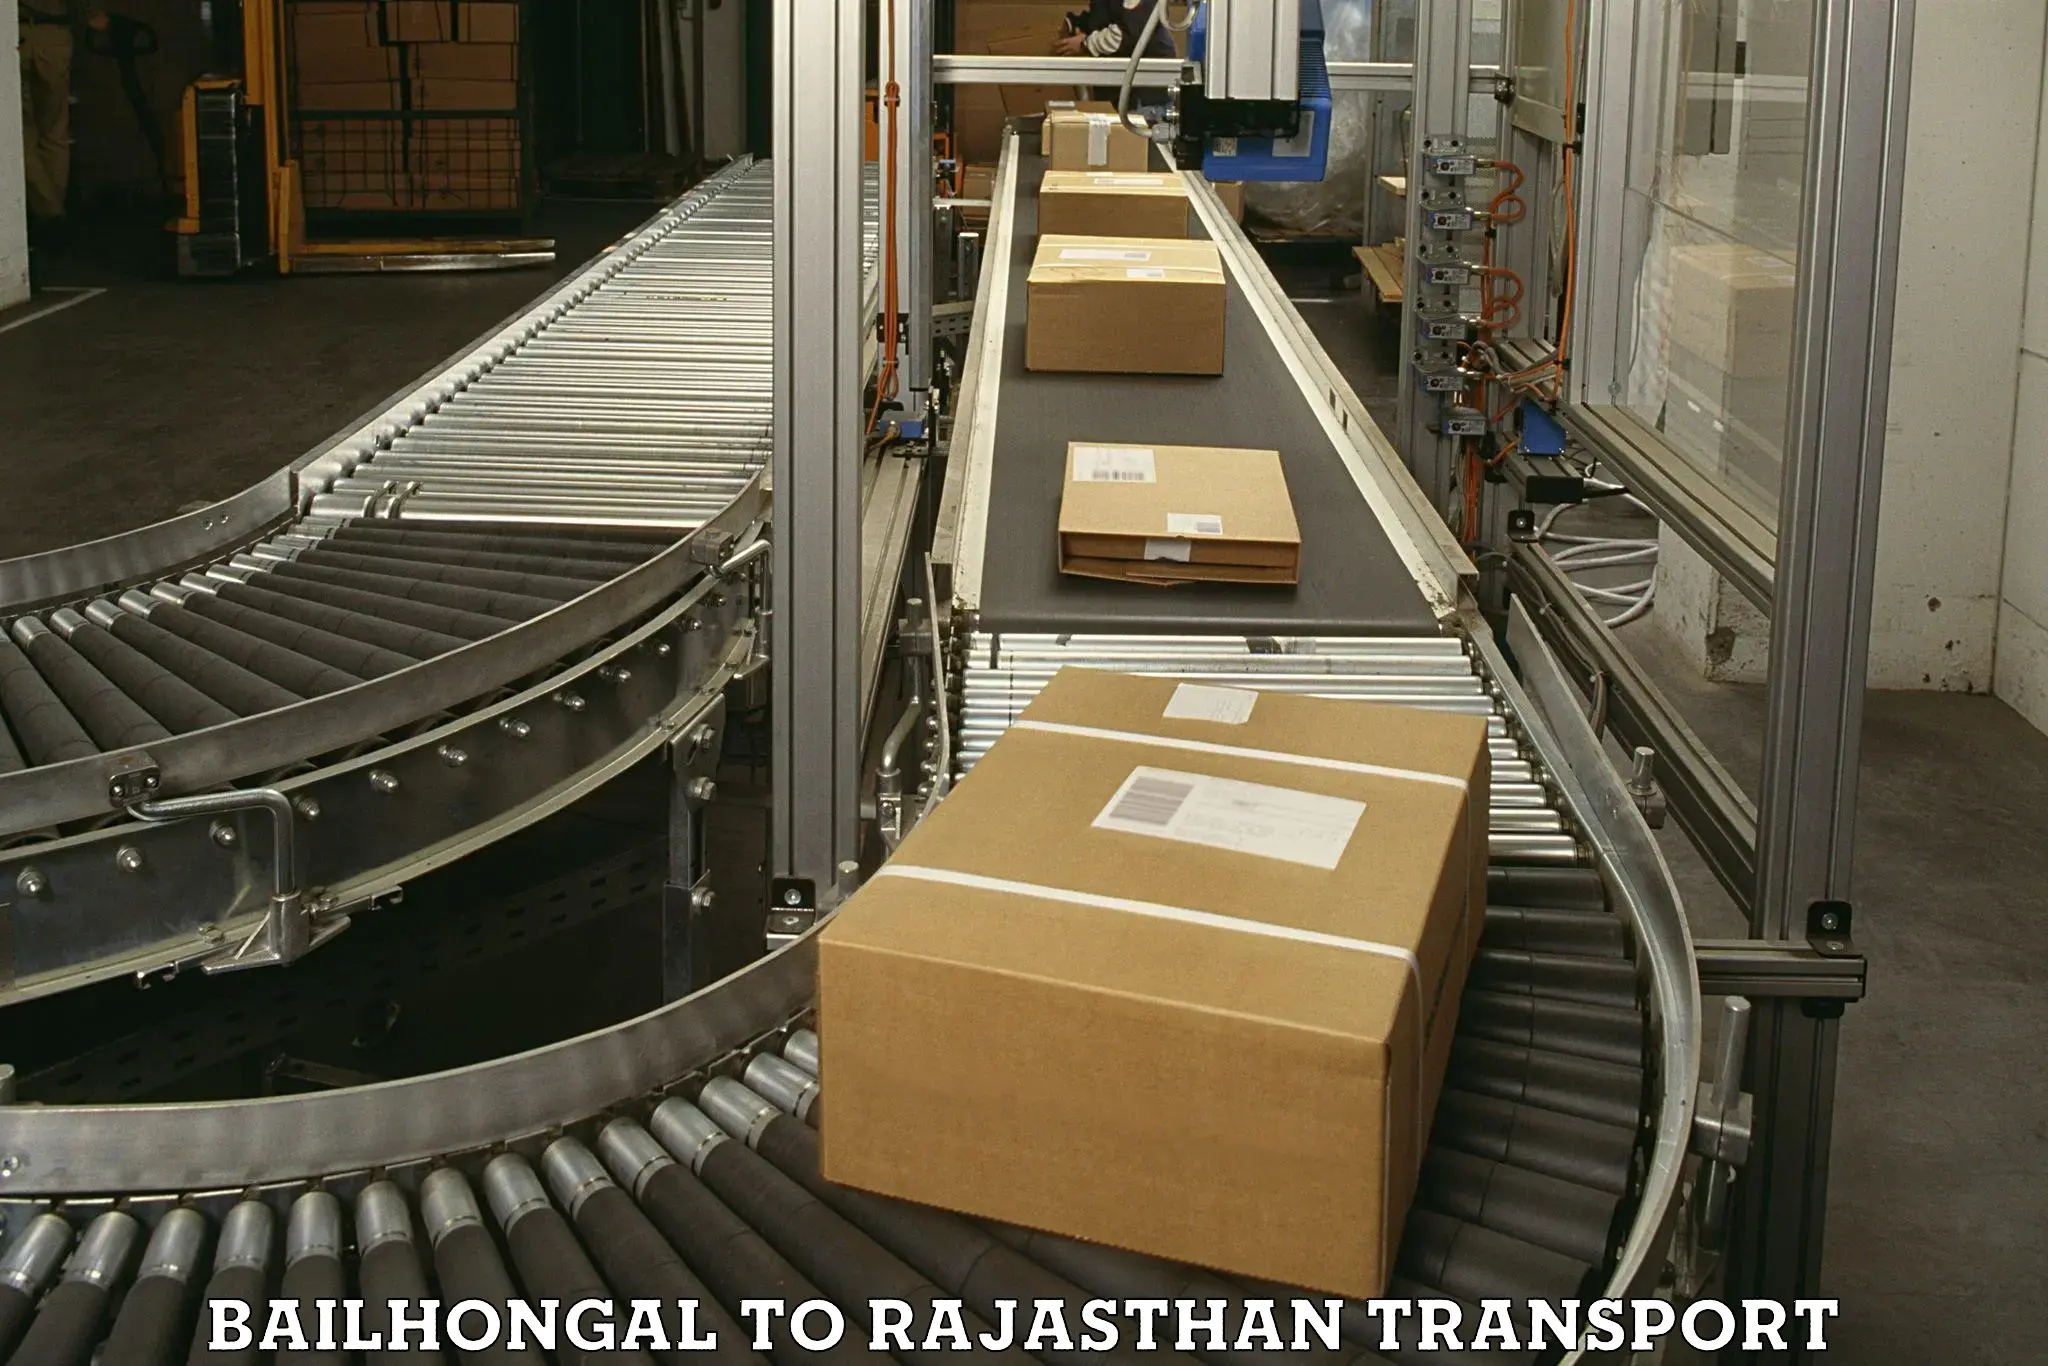 Furniture transport service Bailhongal to Jodhpur